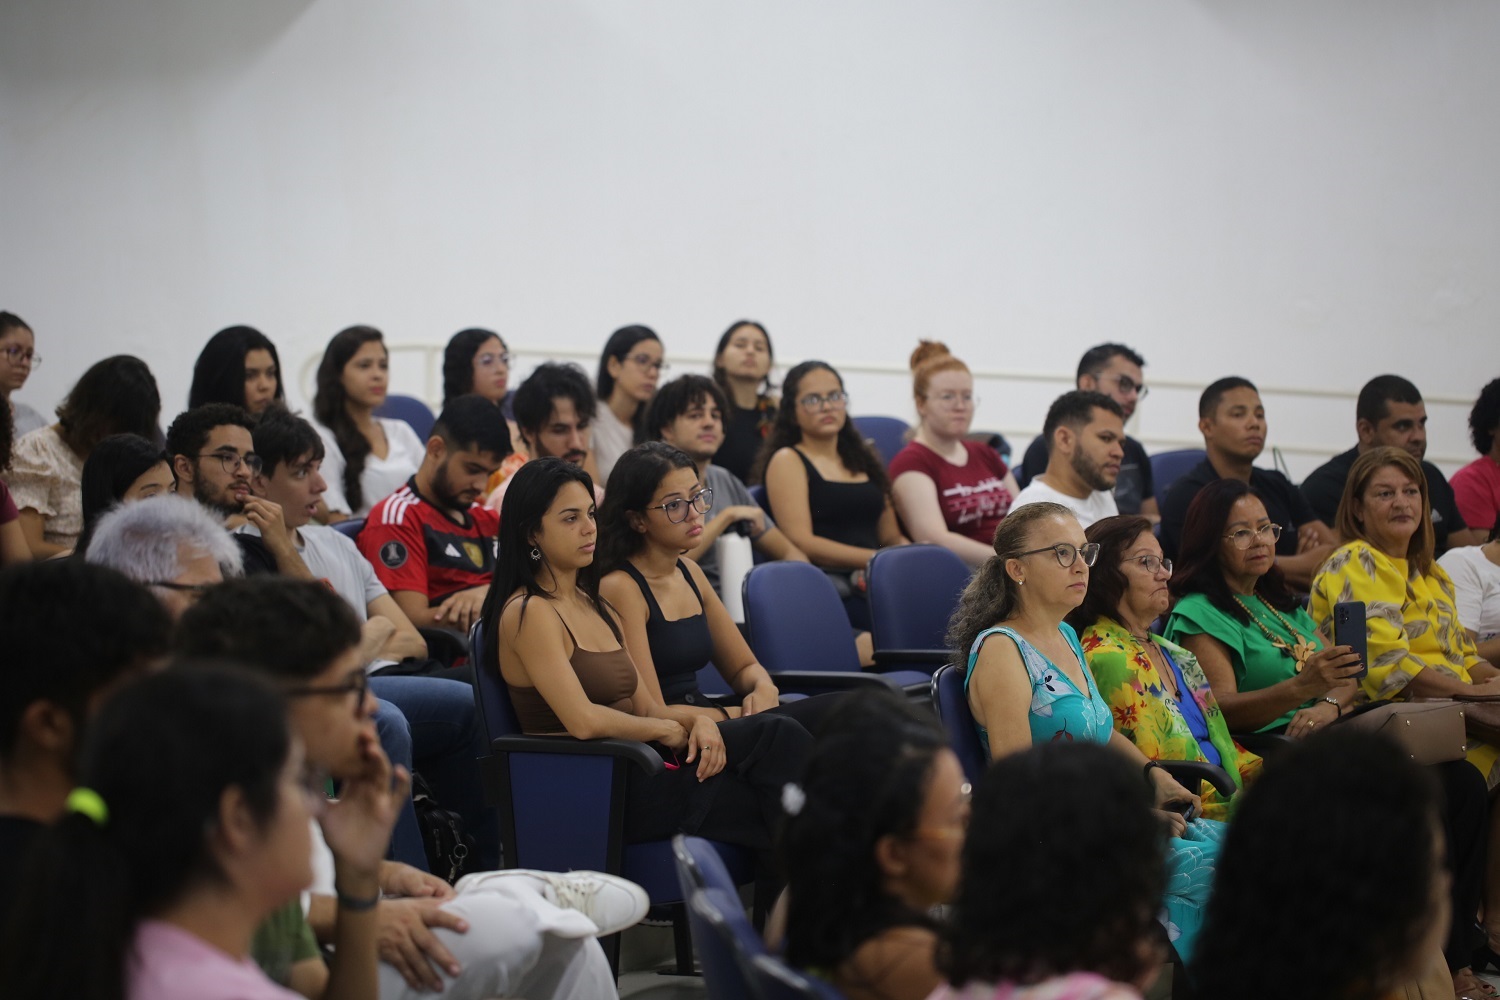 Atividade aconteceu no auditório do Centro de Ciências Exatas e Tecnologia. (foto: Janaína Cavalcante/Ascom UFS)